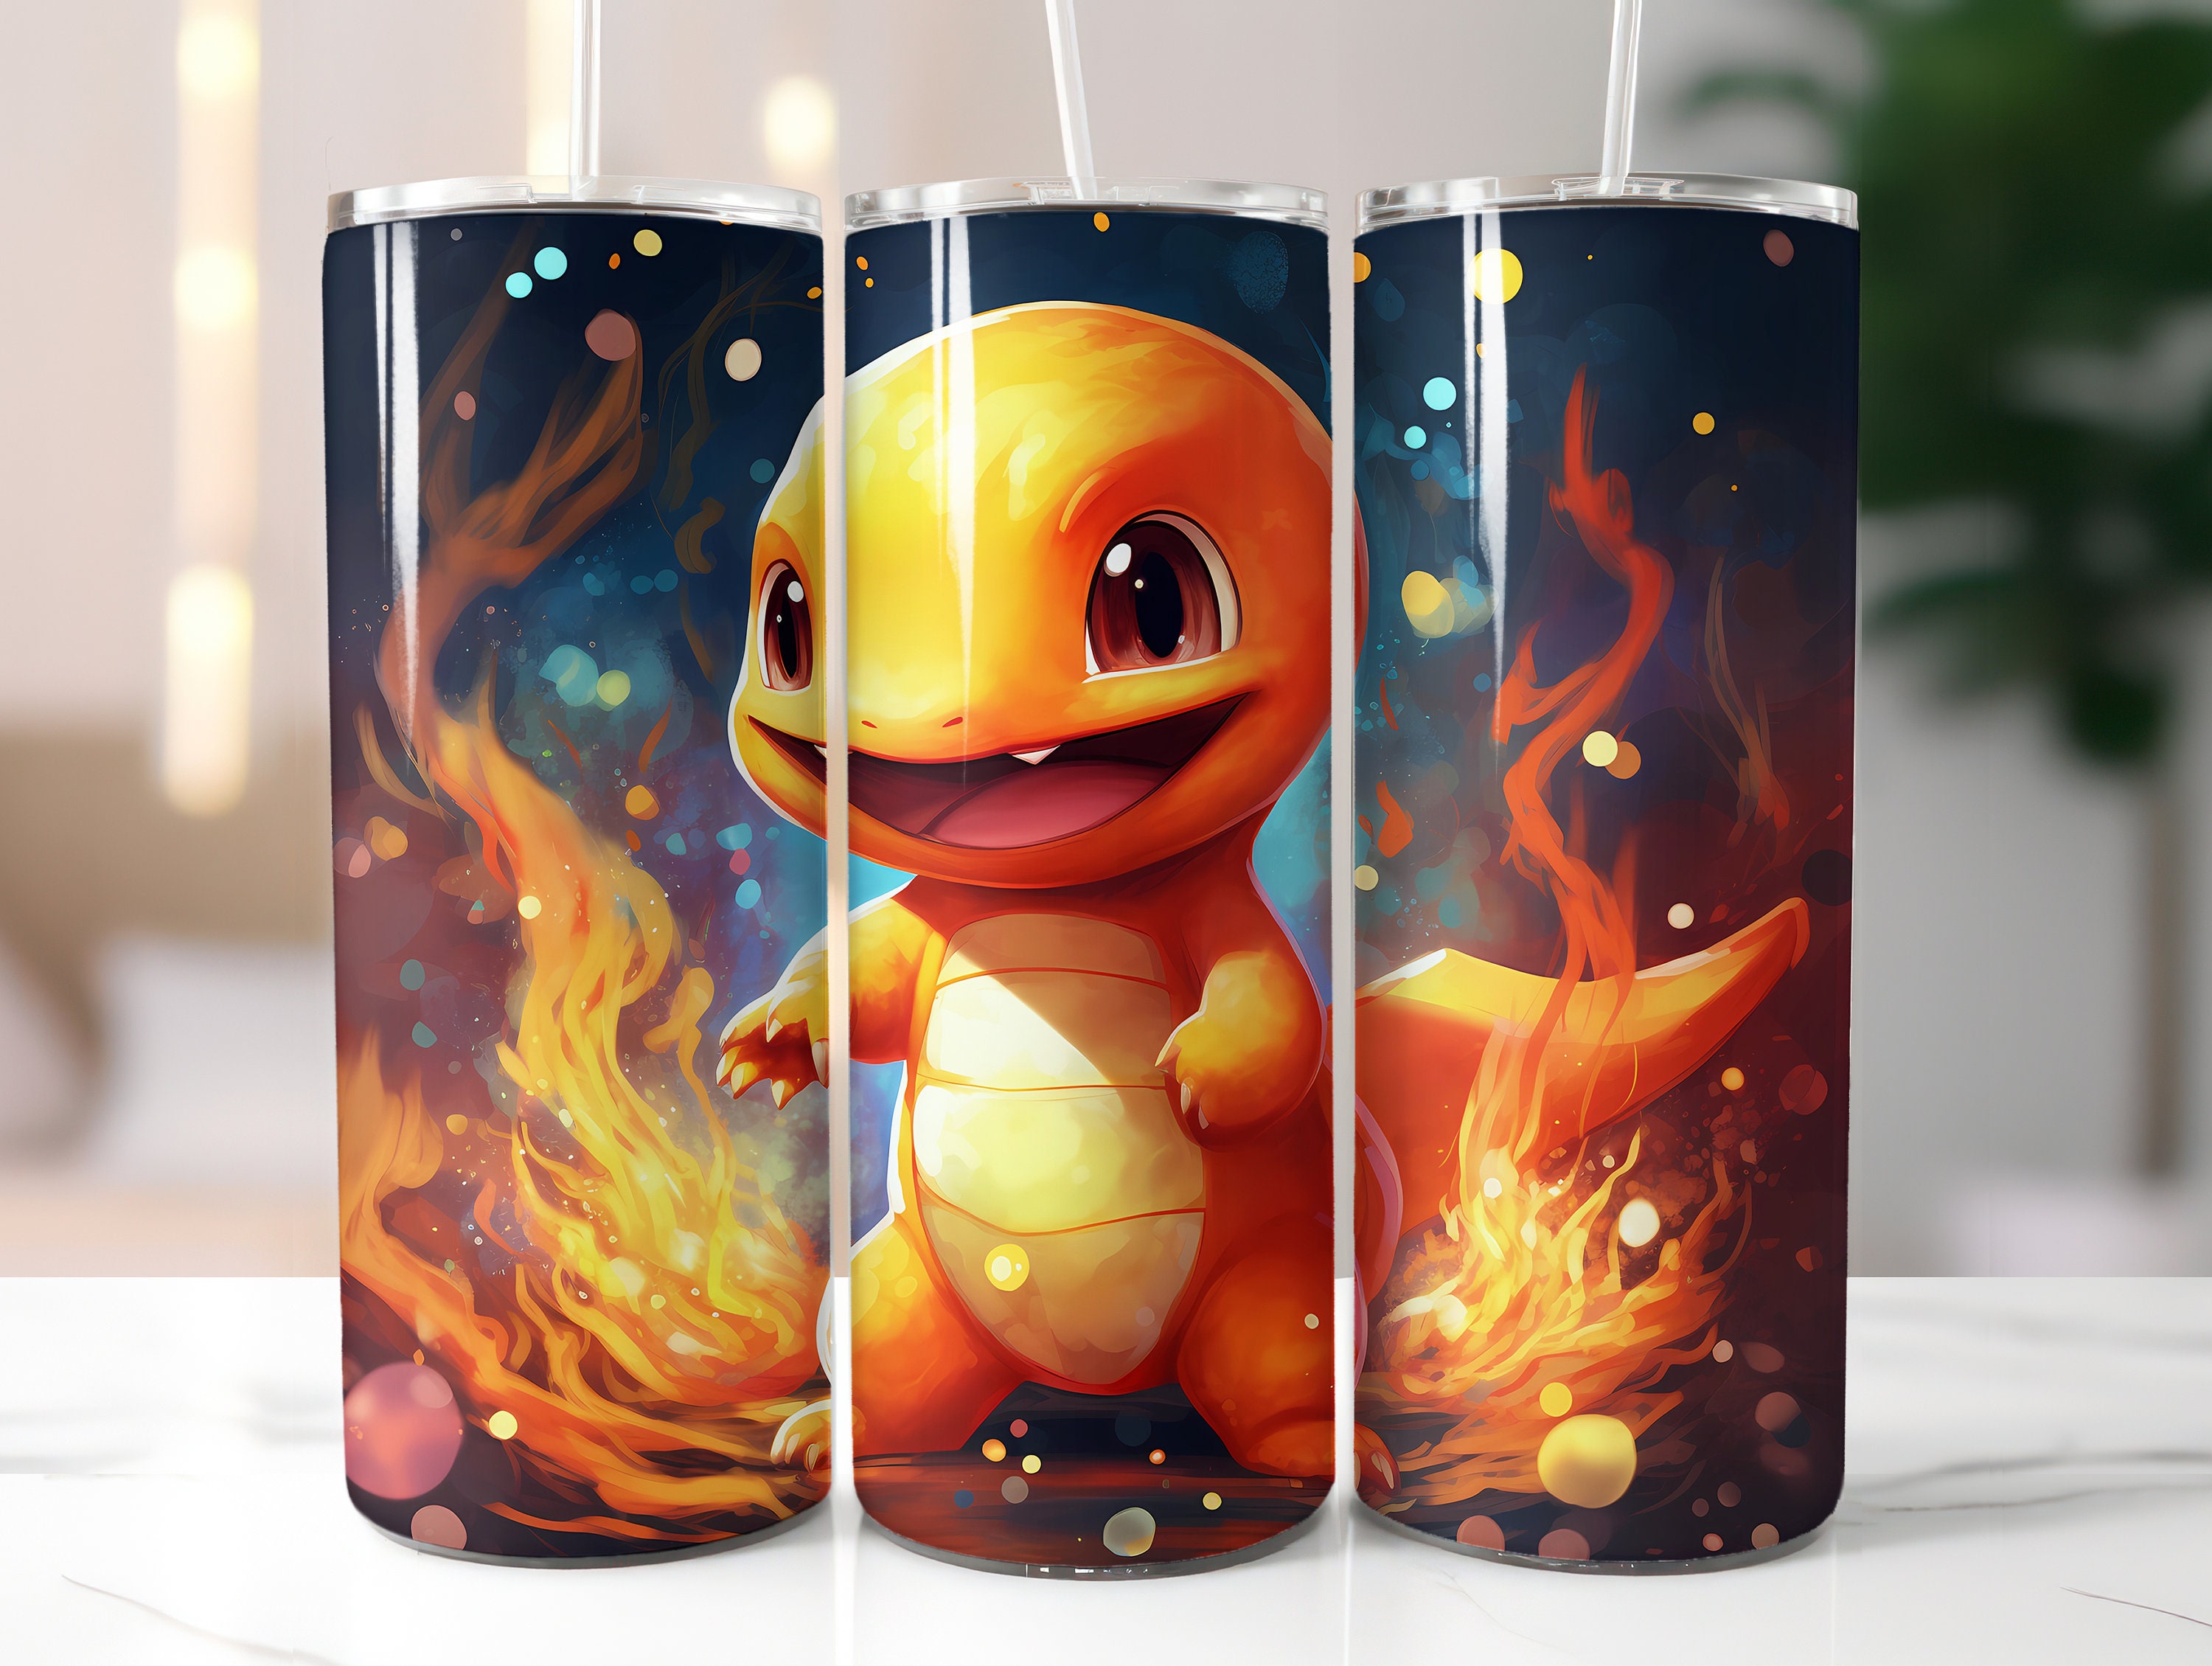 Gobelet Pokémon réutilisable pour enfants ou adultes  Squirtle/Pikachu/Charmander Choix de 1 -  Canada